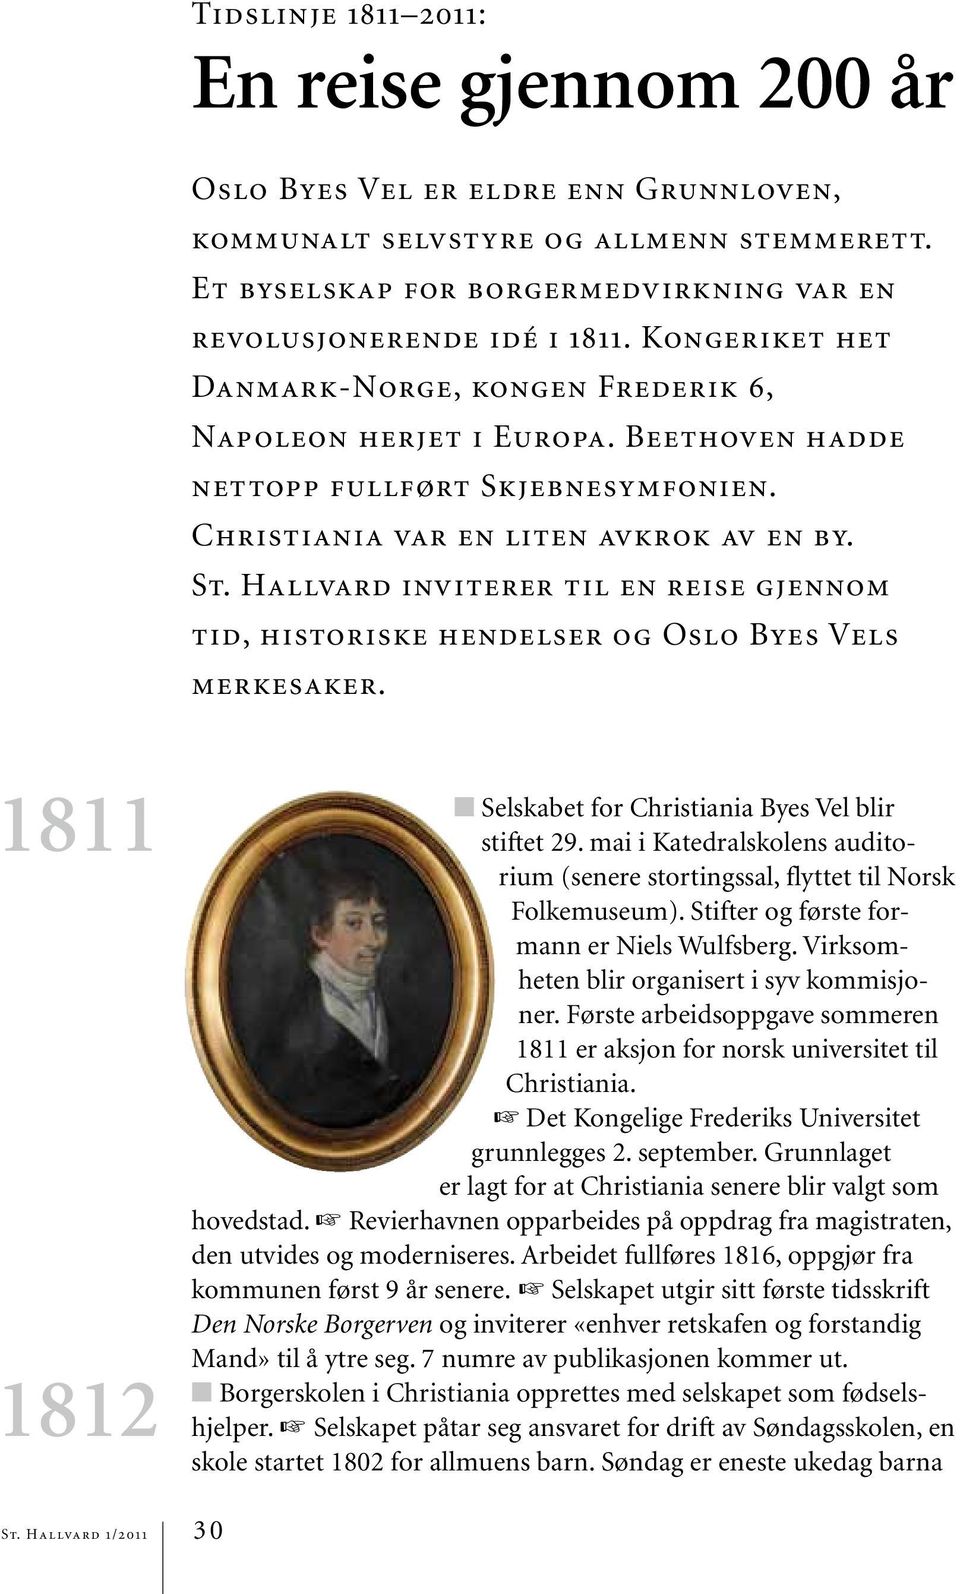 Hallvard inviterer til en reise gjennom tid, historiske hendelser og Oslo Byes Vels merkesaker. 1811 1812 Selskabet for Christiania Byes Vel blir stiftet 29.